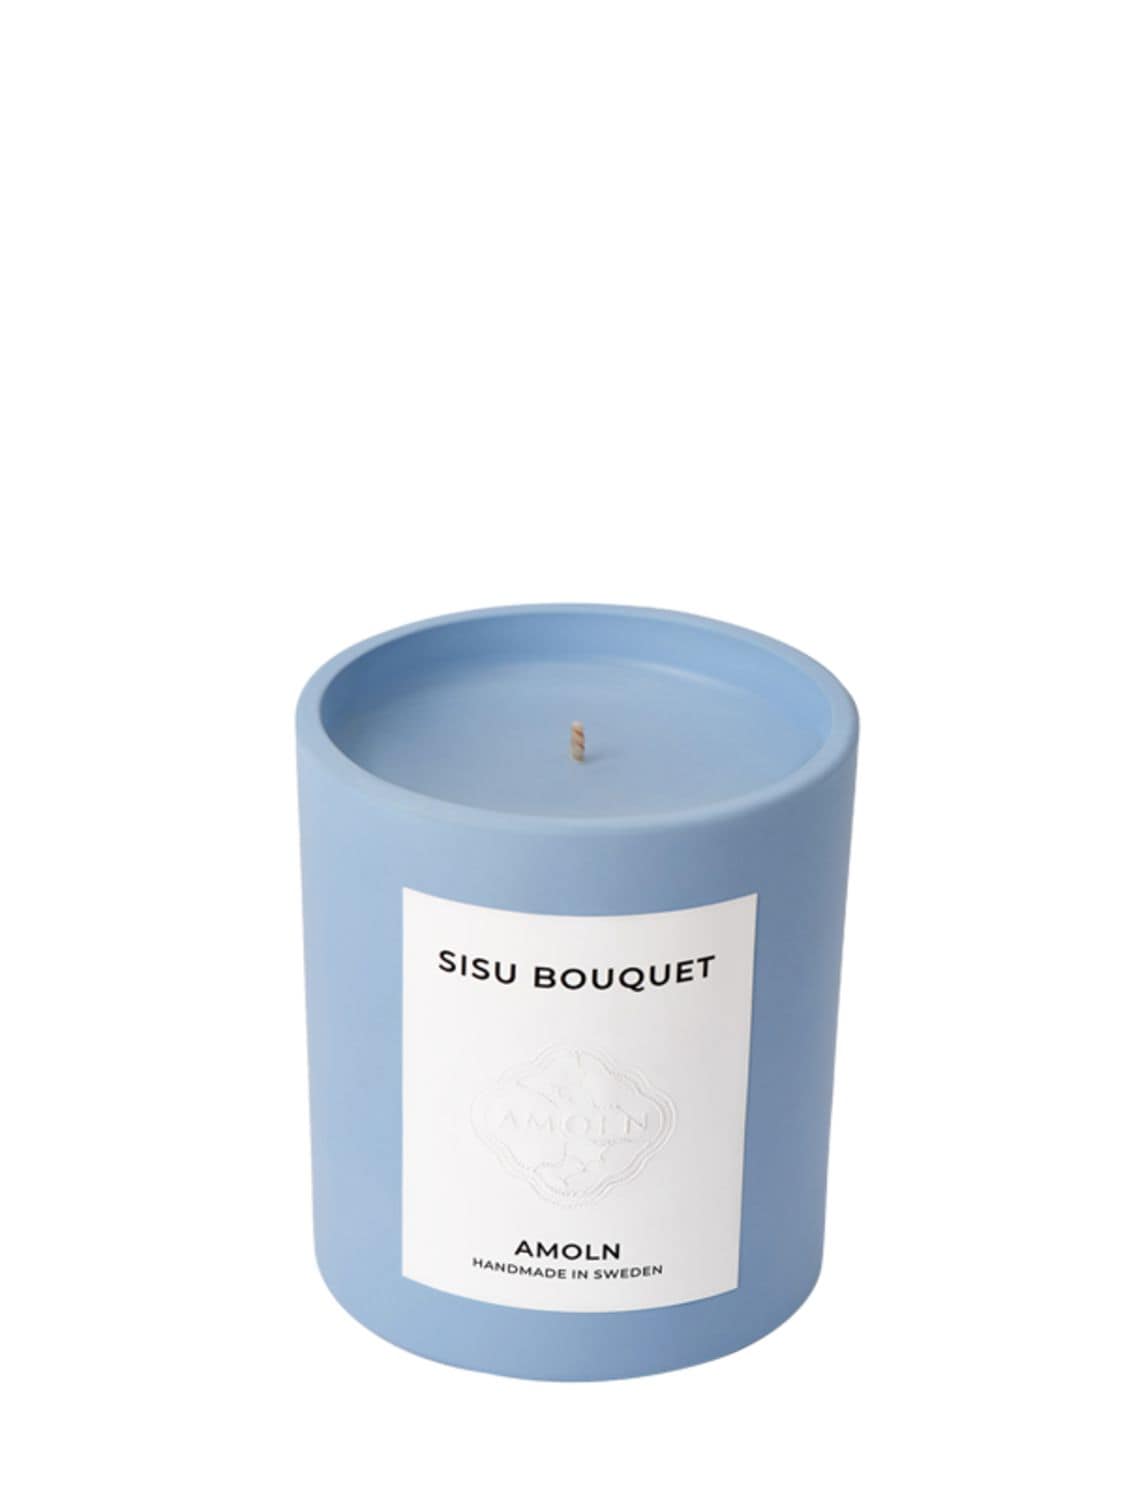 Amoln "sisu Bouquet"香氛蜡烛 In Blue